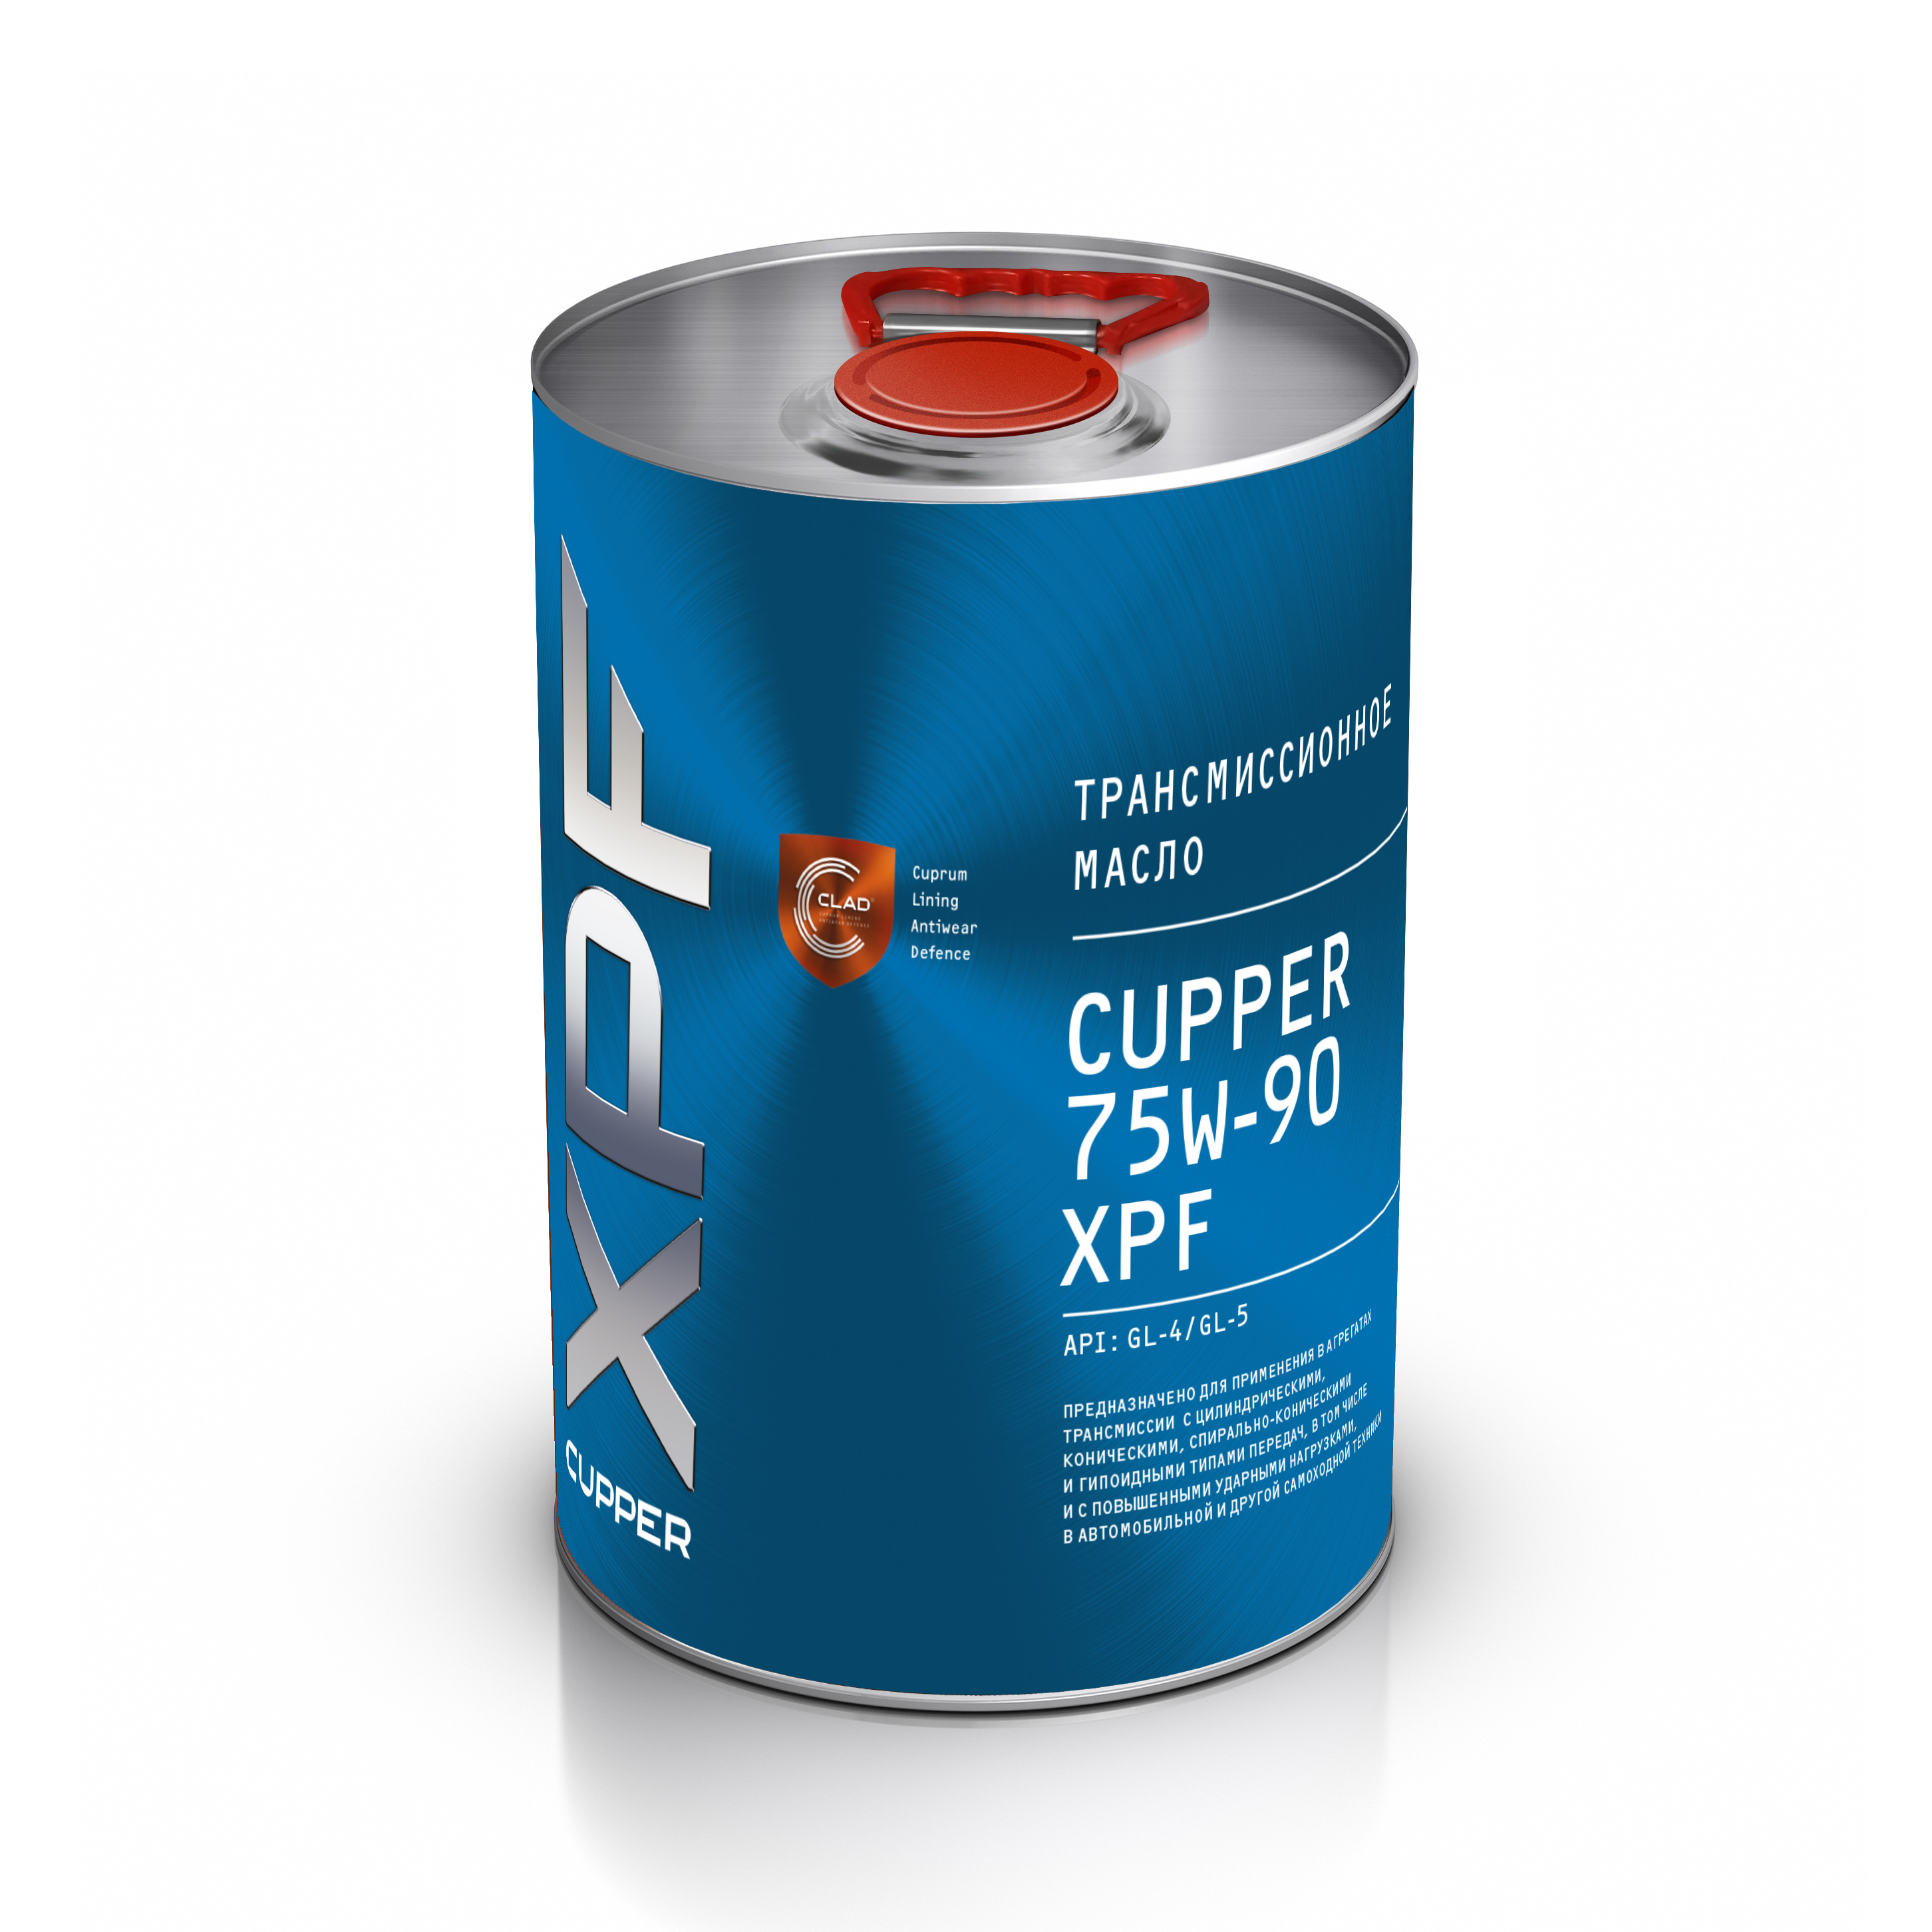 Купить масло трансмиссионное синтетическое CUPPER 75W-90 XPF (4 л)  характеристики, описание, фото и цены интернет-магазина